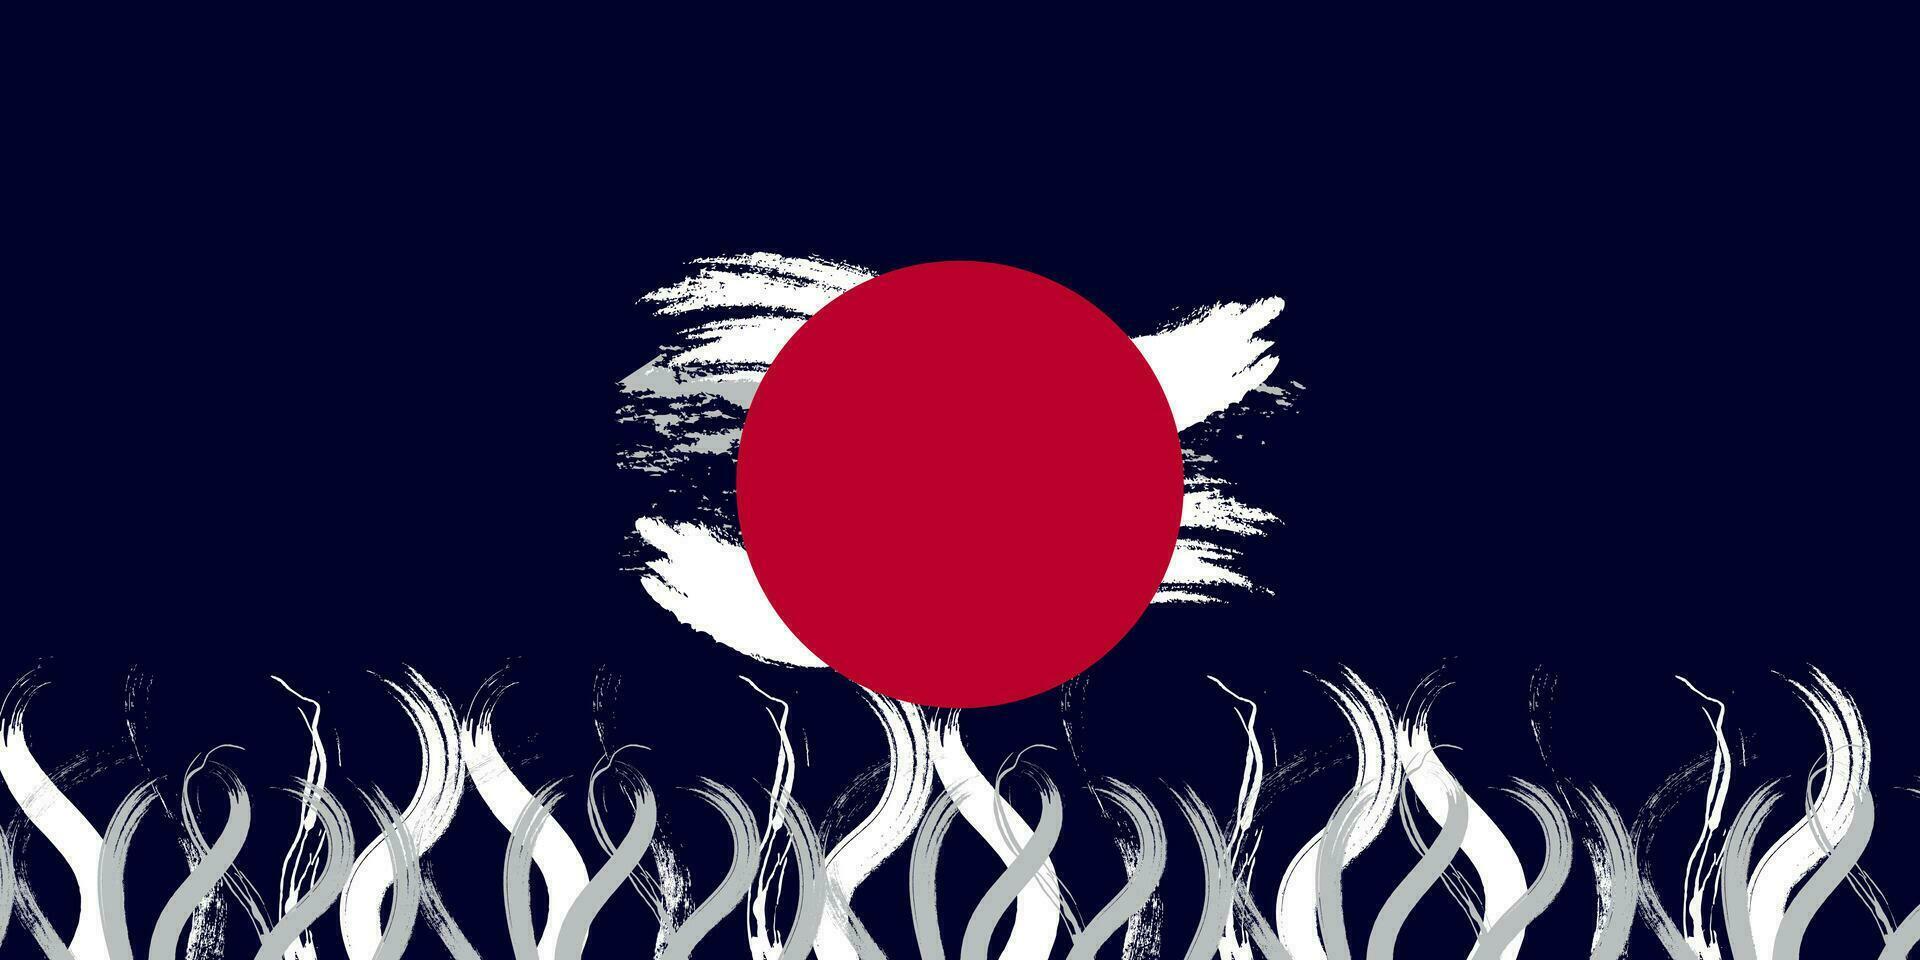 Japon drapeau coup de pinceau concept sur foncé bleu Contexte. Japon symbole, modèle pour bannière, promotion, conception et affiche, entreprise, vecteur illustration